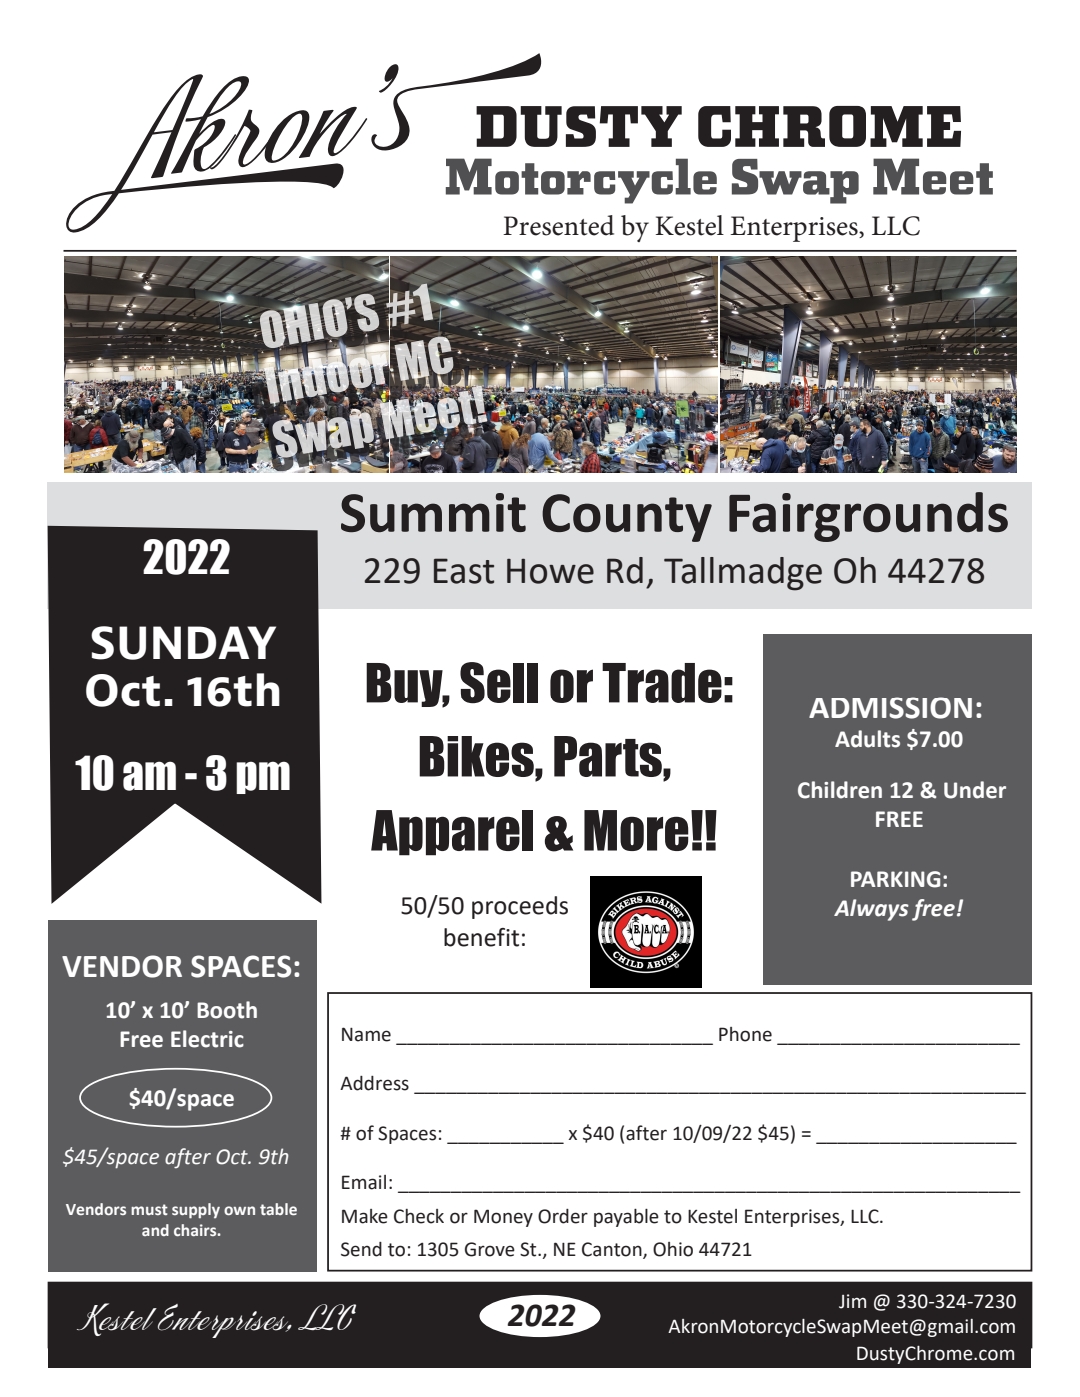 Akron Motorcycle Swap Meet